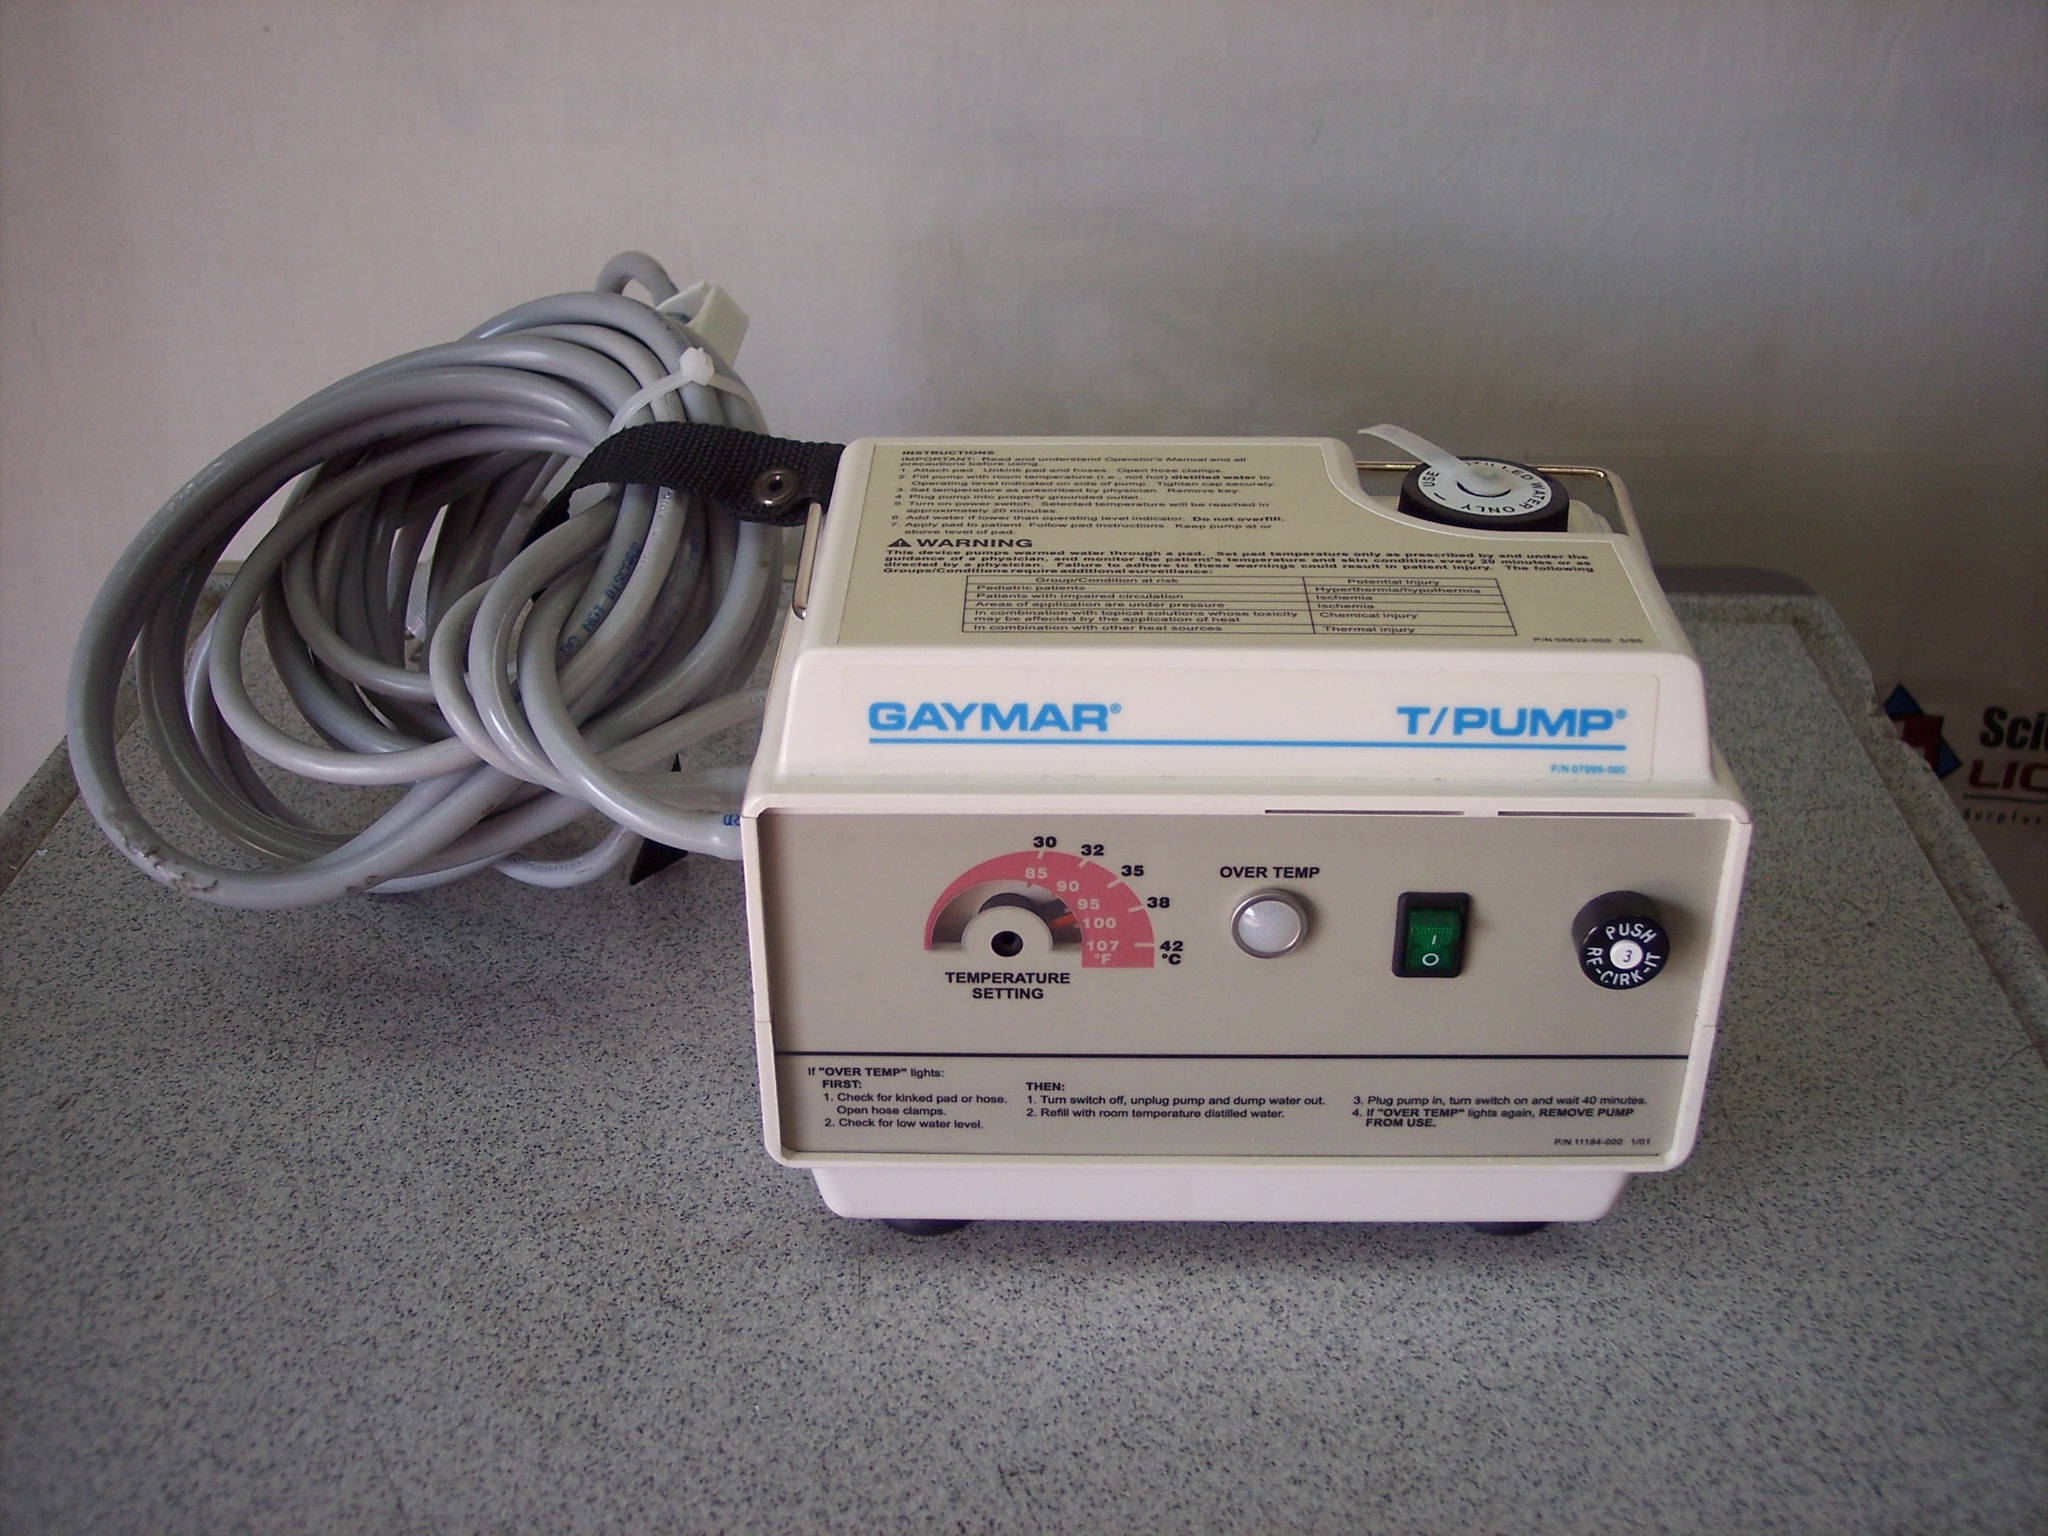 Gaymar TP-500 T/Pump Heat Therapy Pump